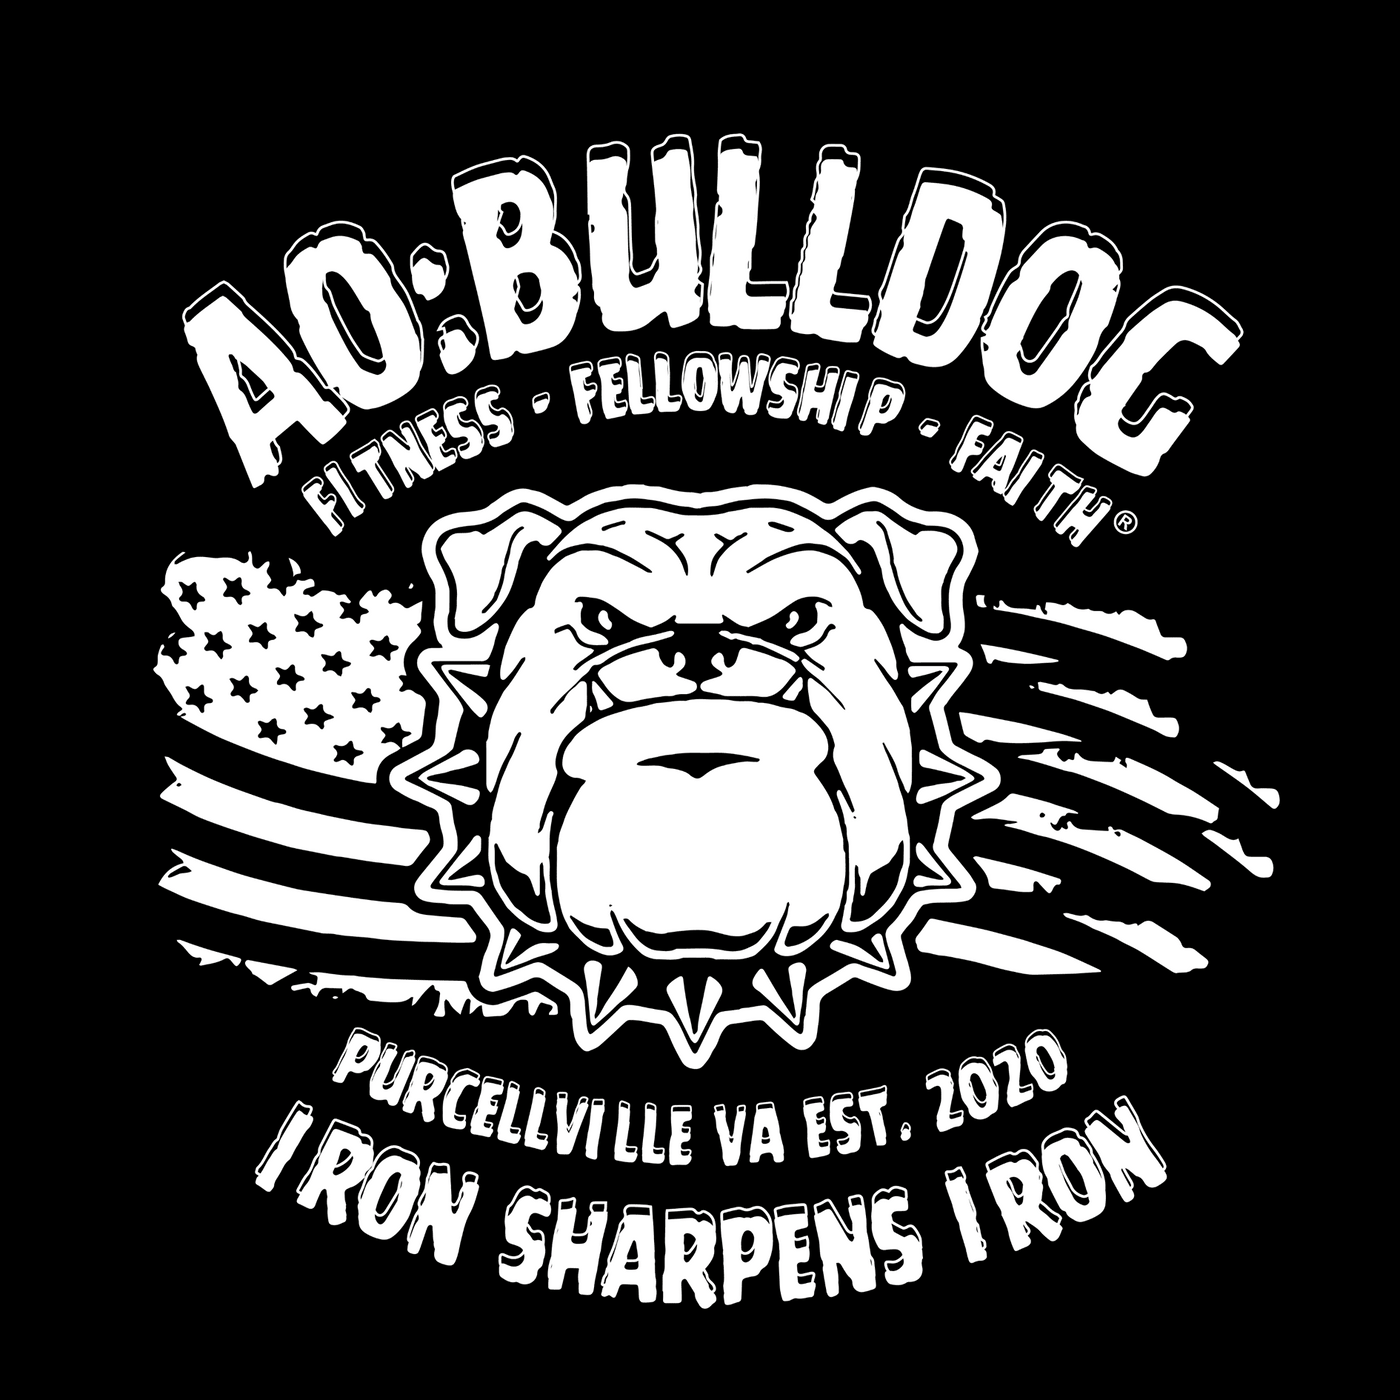 F3 Blue Ridge Bulldog Pre-Order August 2023